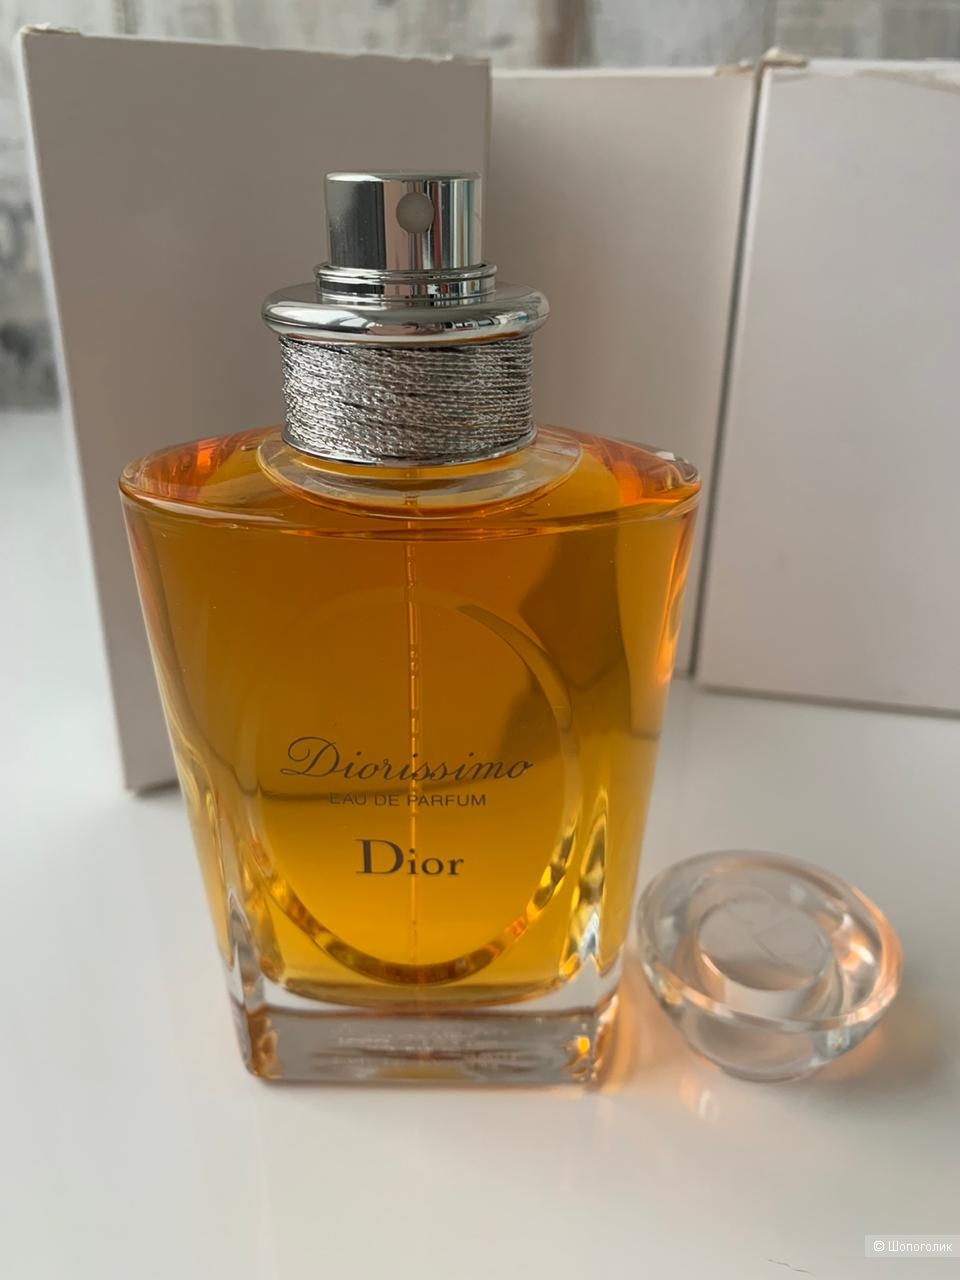 Парфюмерная вода, Diorissimo Eau de Parfum Christian Dior для женщин, 100 мл